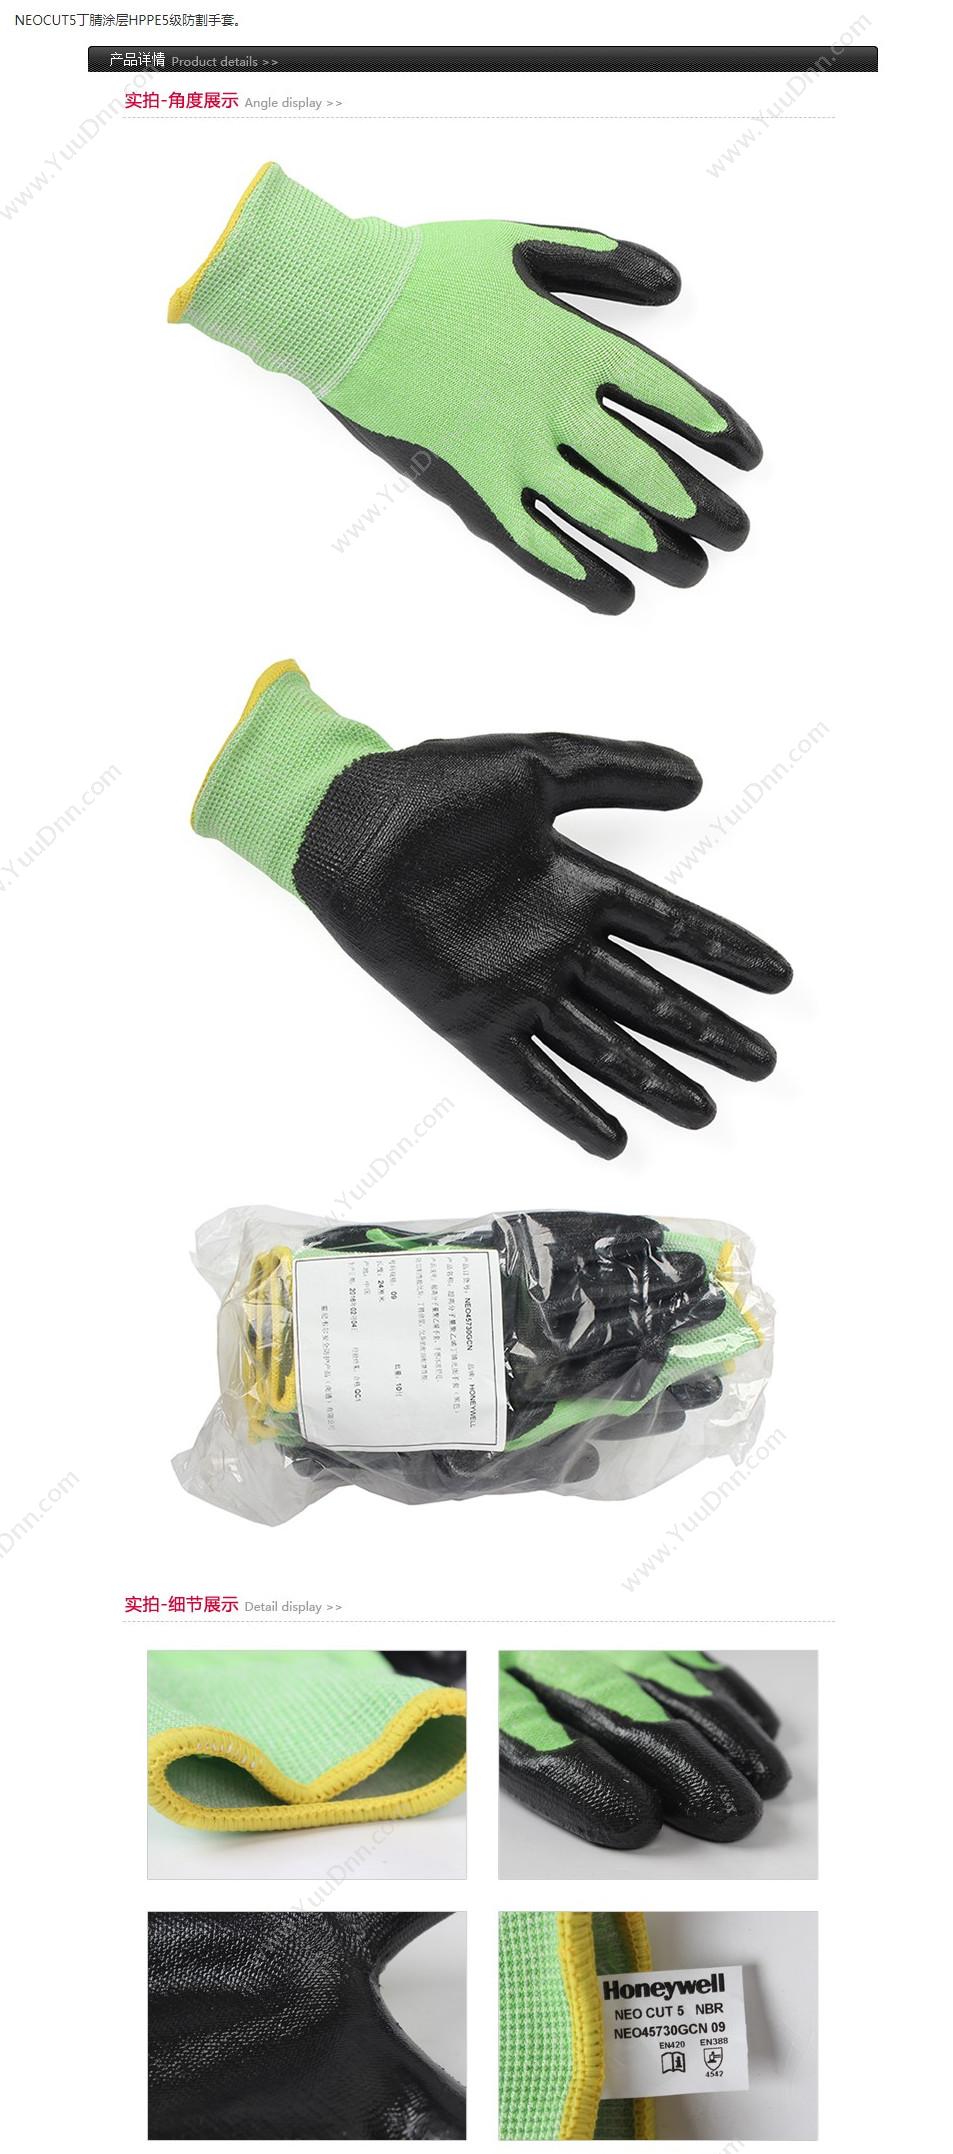 霍尼韦尔 Honeywell NEO45740GCN 经济型 - NEOCUT 高模量聚乙烯 乳胶涂层 08 黑（绿） 10副/包 防割手套